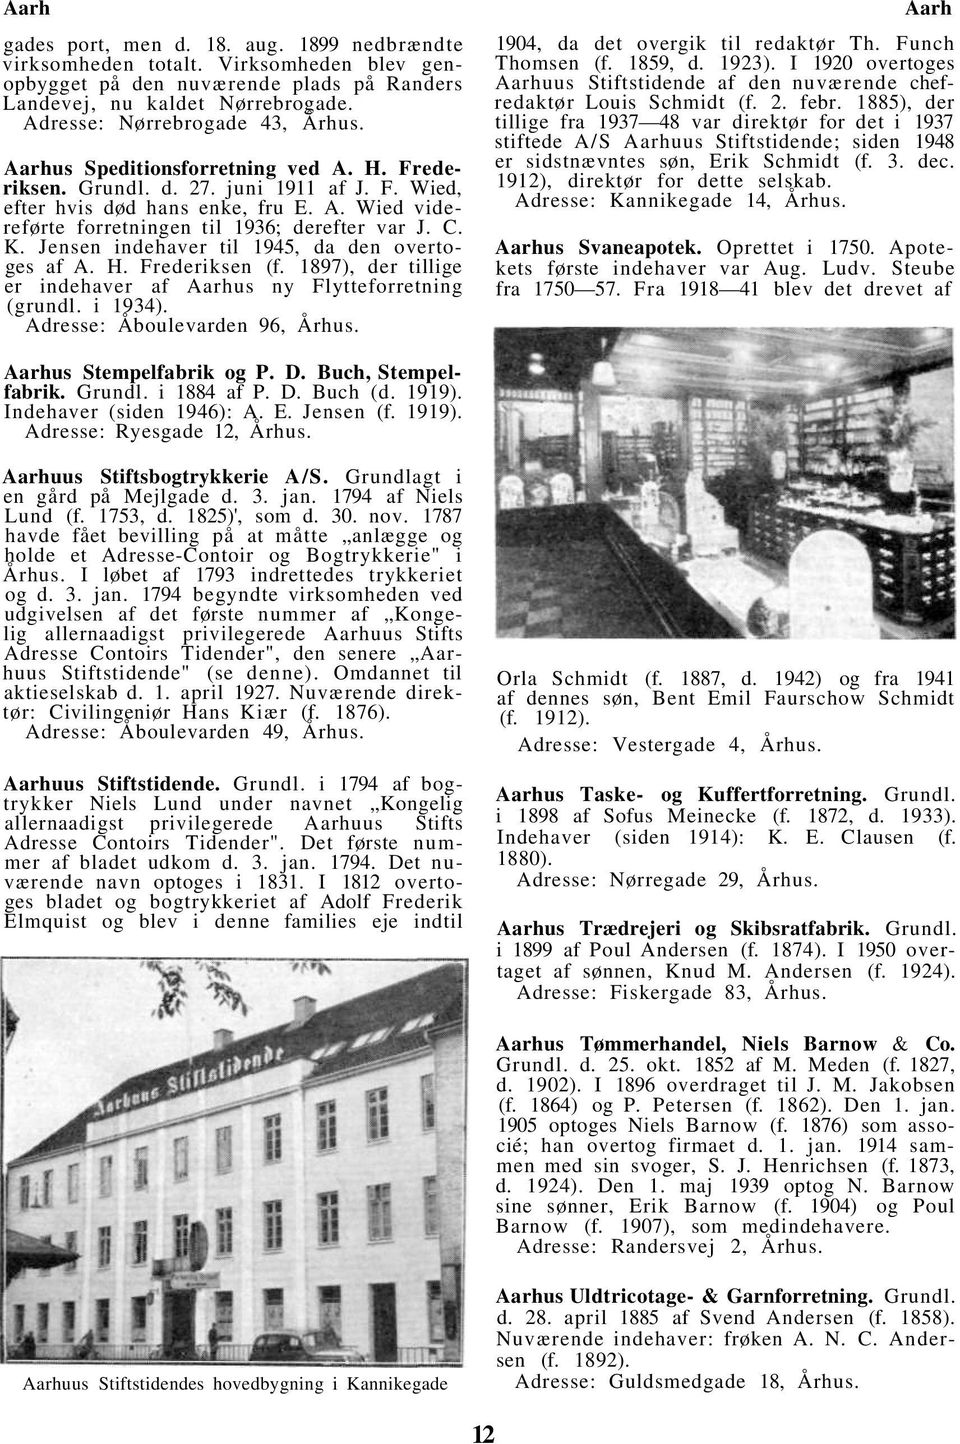 Jensen indehaver til 1945, da den overtoges af A. H. Frederiksen (f. 1897), der tillige er indehaver af Aarhus ny Flytteforretning (grundl. i 1934). Adresse: Åboulevarden 96, Århus.